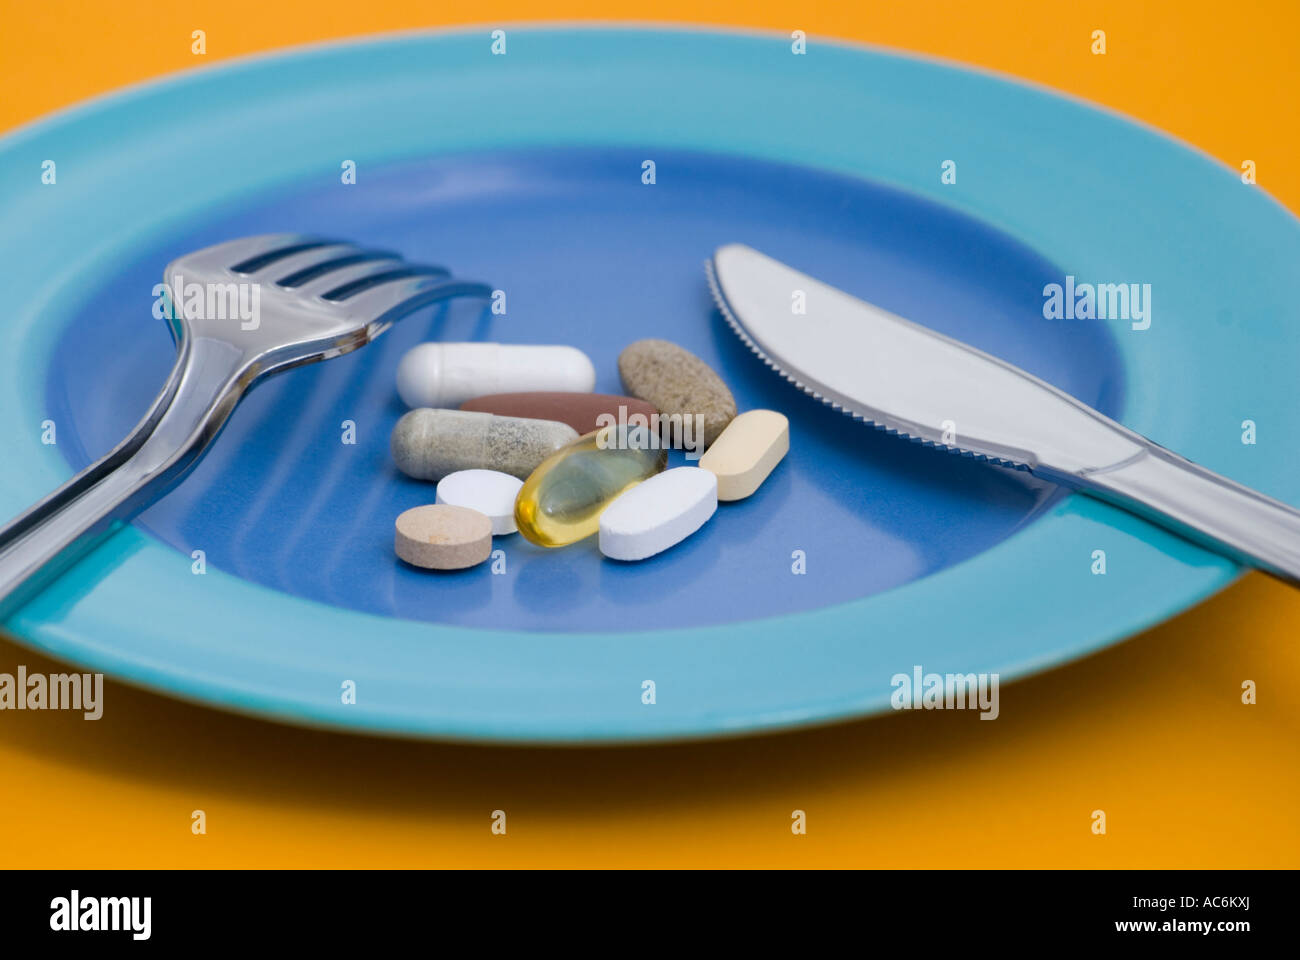 Comprimés de vitamines et compléments alimentaires sur la plaque avec des couverts Banque D'Images